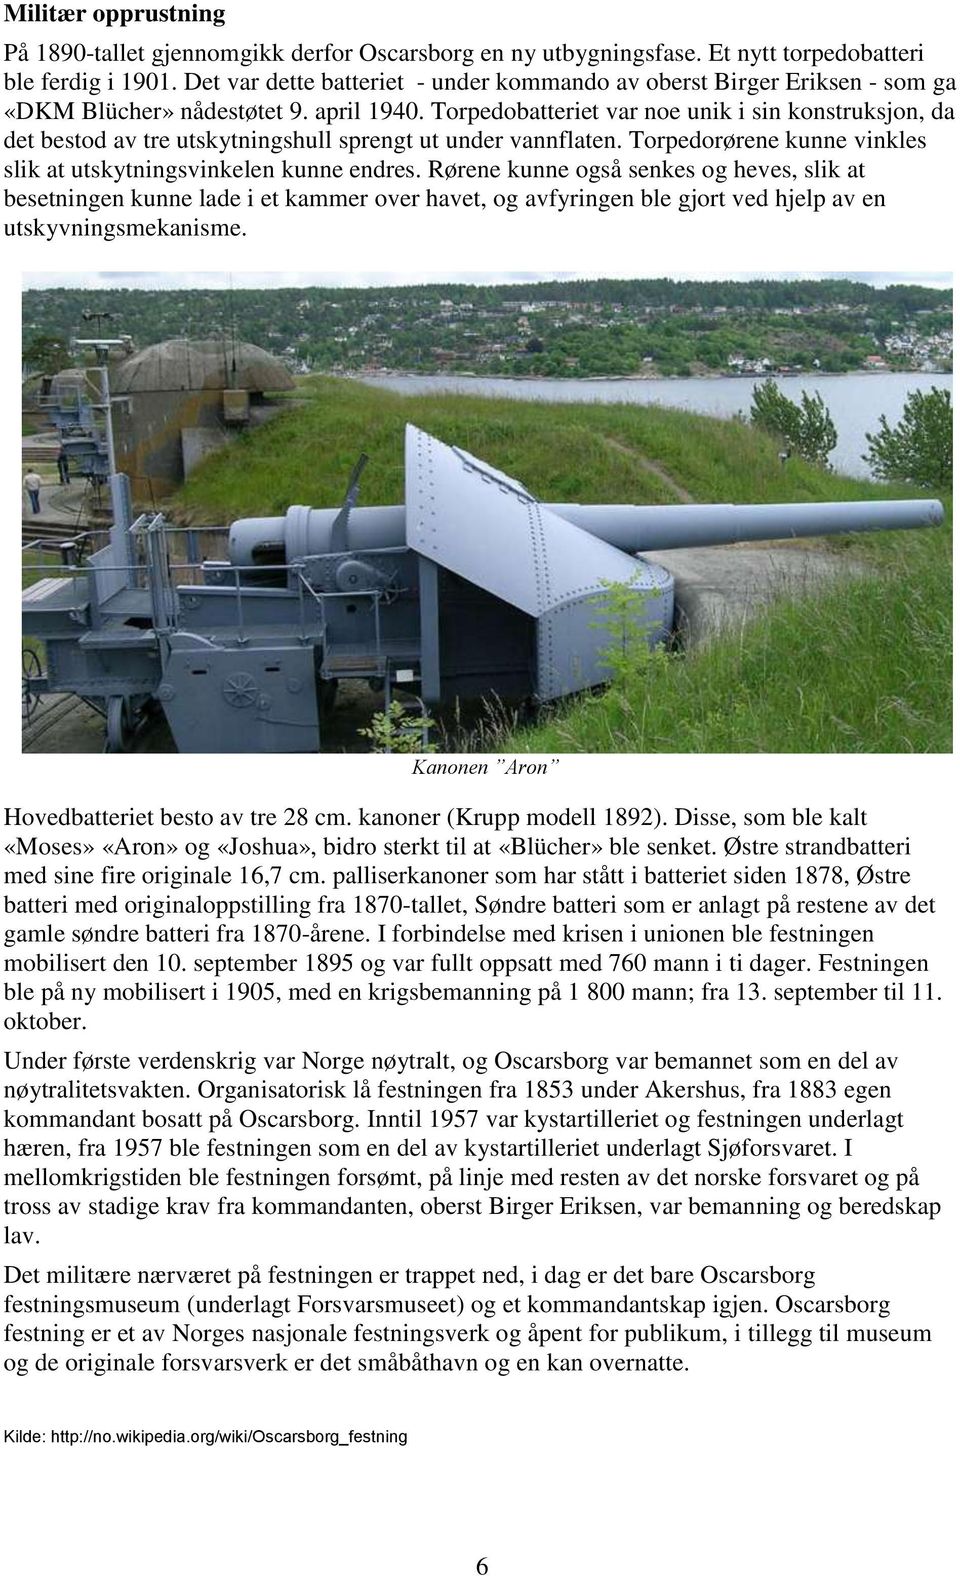 Torpedobatteriet var noe unik i sin konstruksjon, da det bestod av tre utskytningshull sprengt ut under vannflaten. Torpedorørene kunne vinkles slik at utskytningsvinkelen kunne endres.